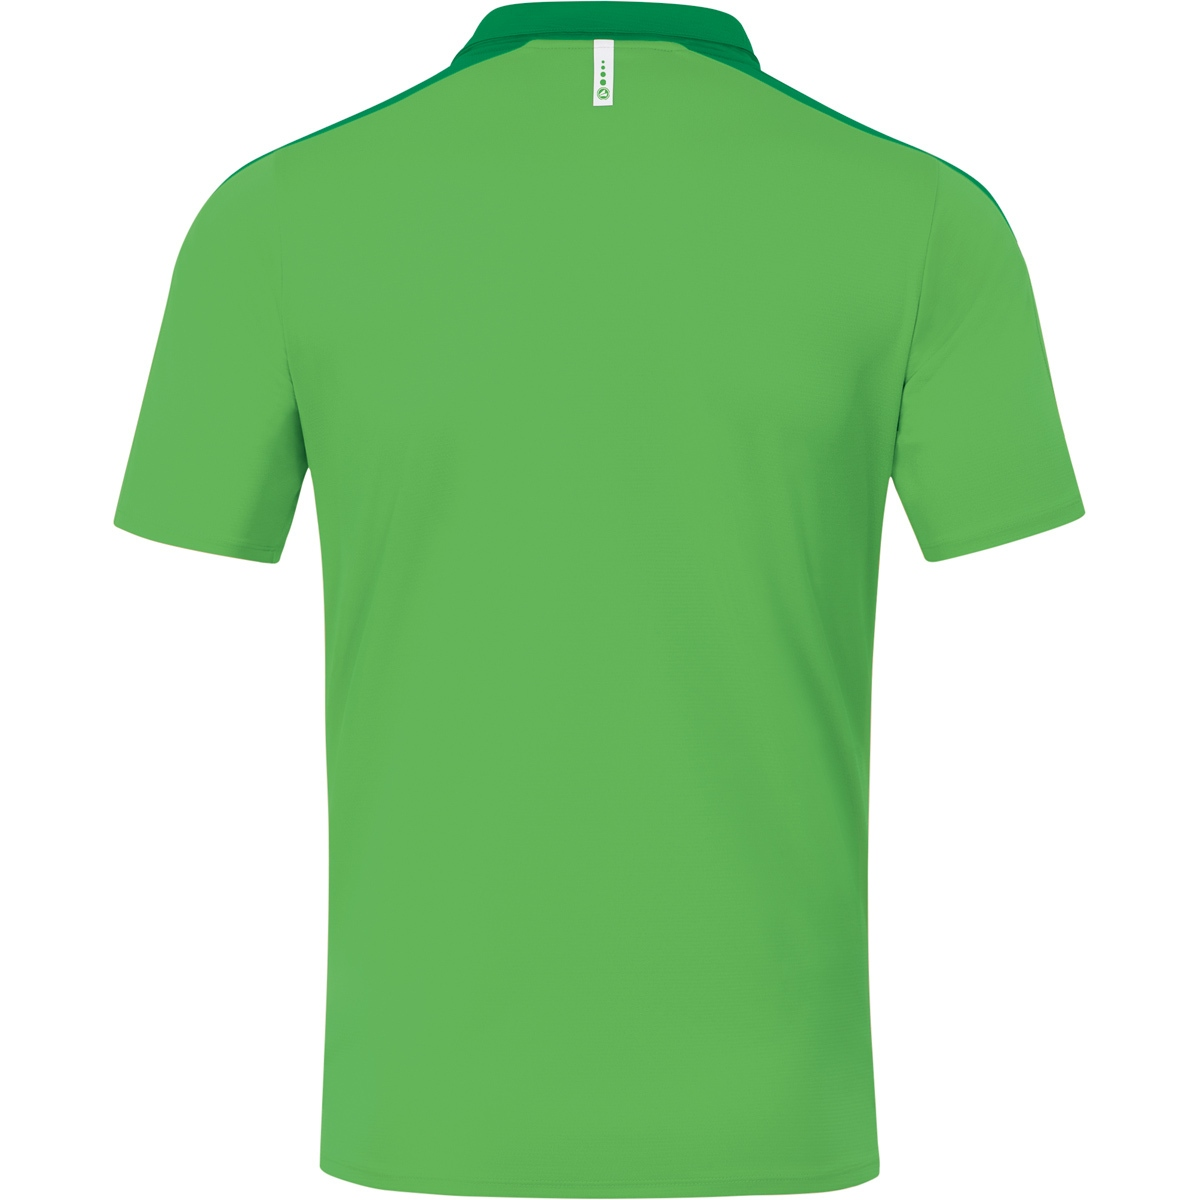 44, JAKO Champ green/sportgrün, 6320 Damen, soft Gr. Polo 2.0